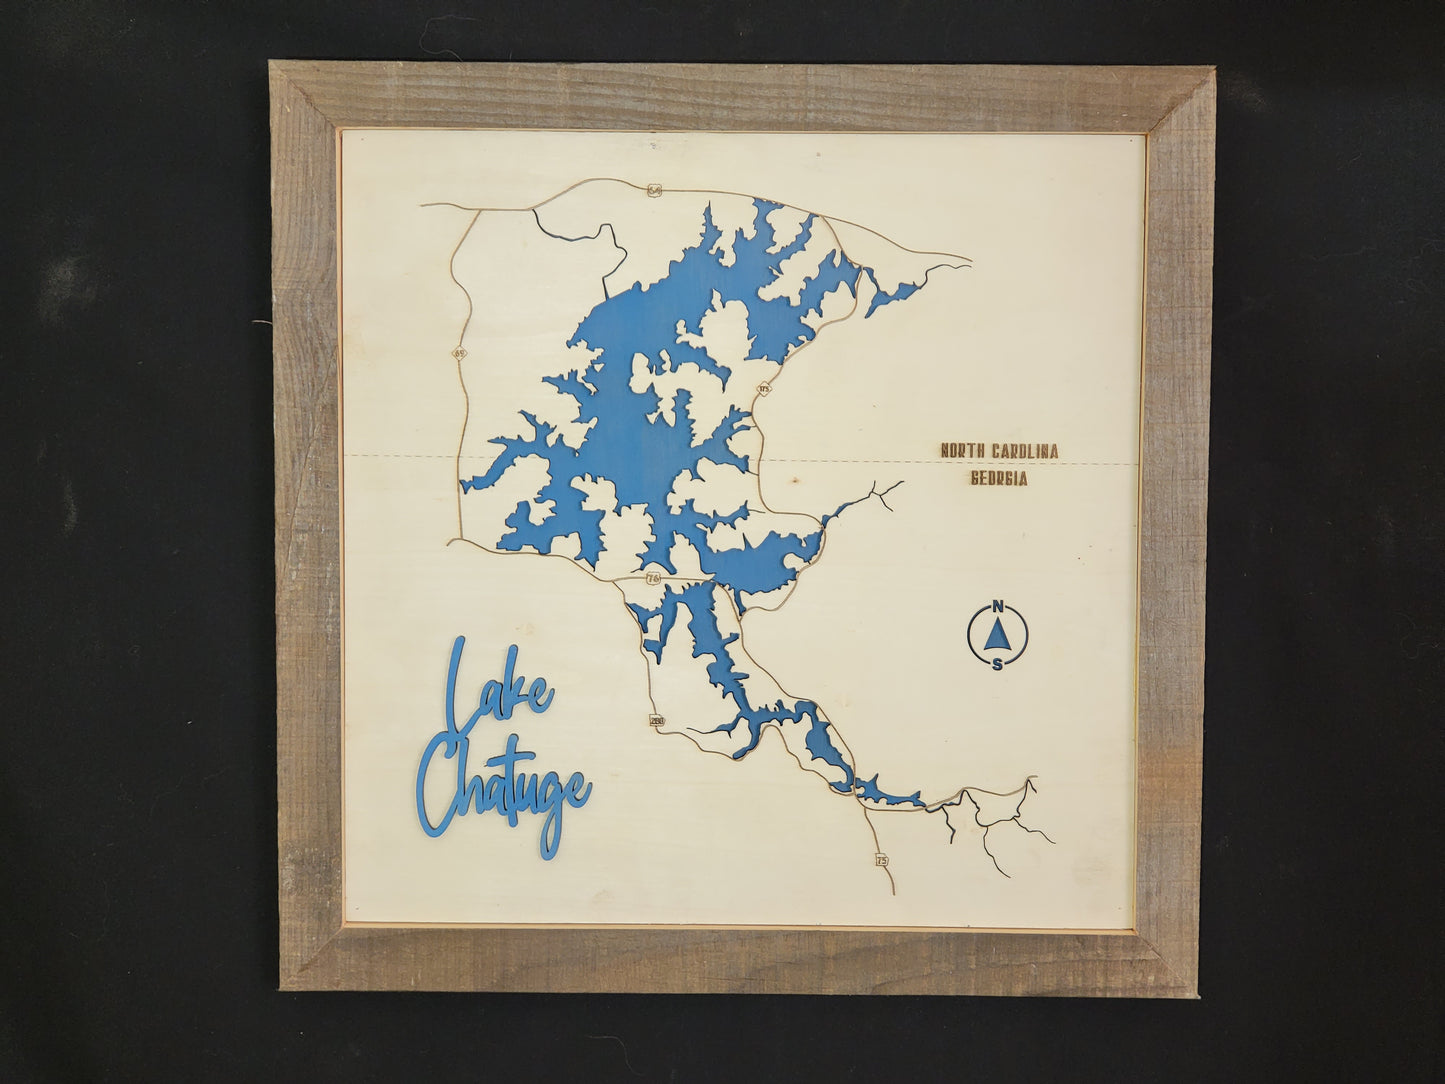 Lake Chatuge - Laser Cut Map